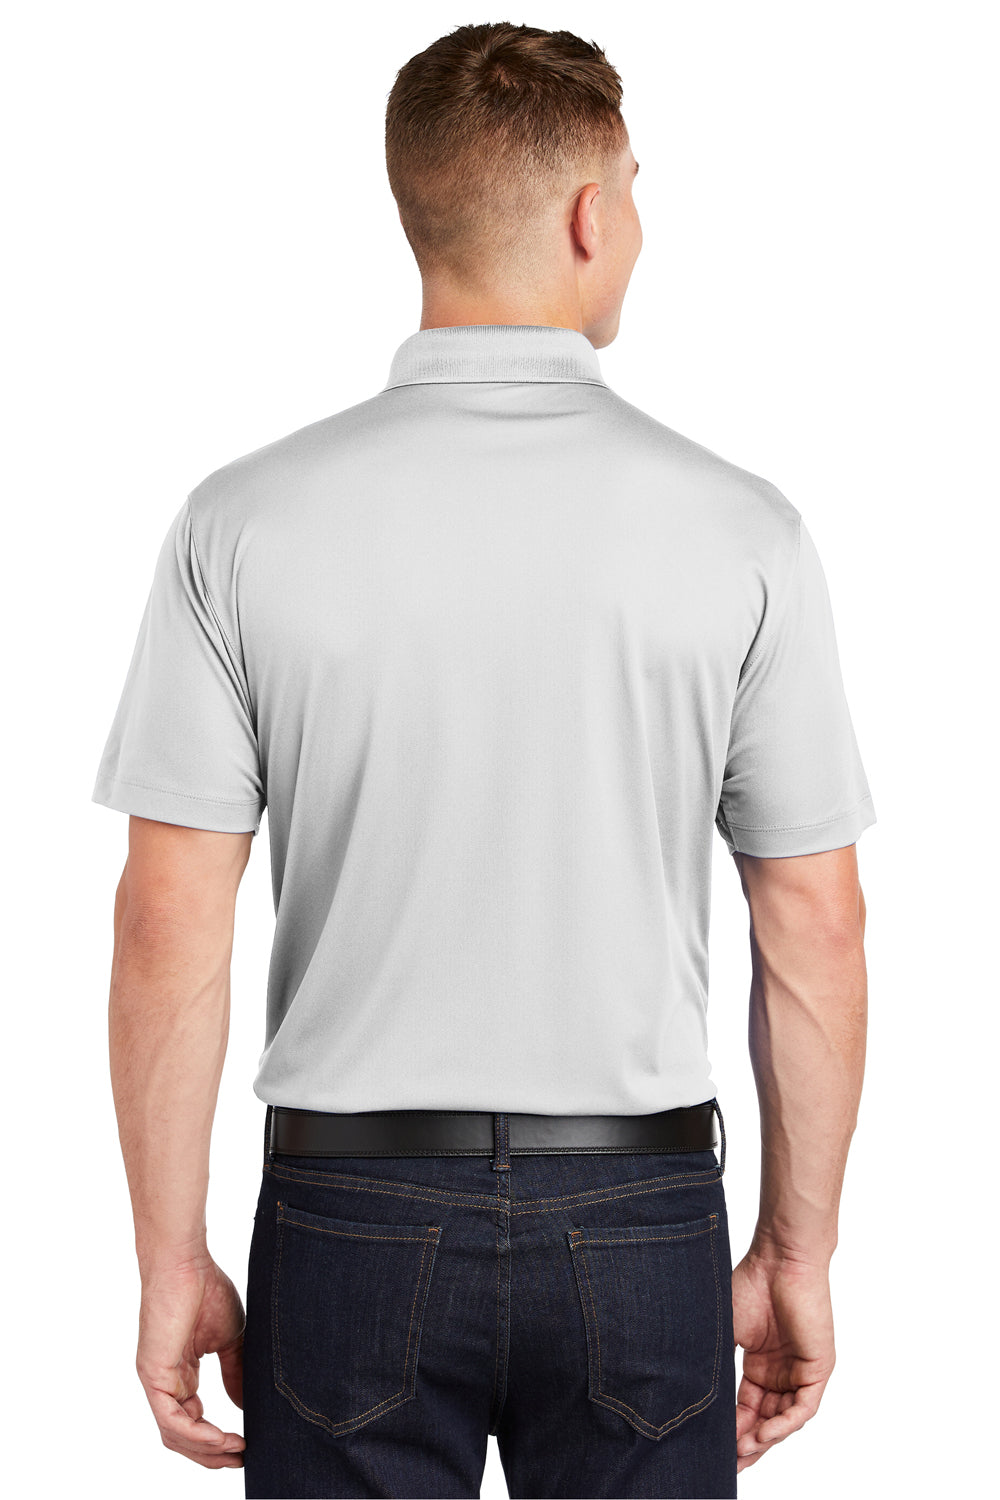 Sport-Tek ST650 Mens Sport-Wick Moisture Wicking Short Sleeve Polo Shirt White Back